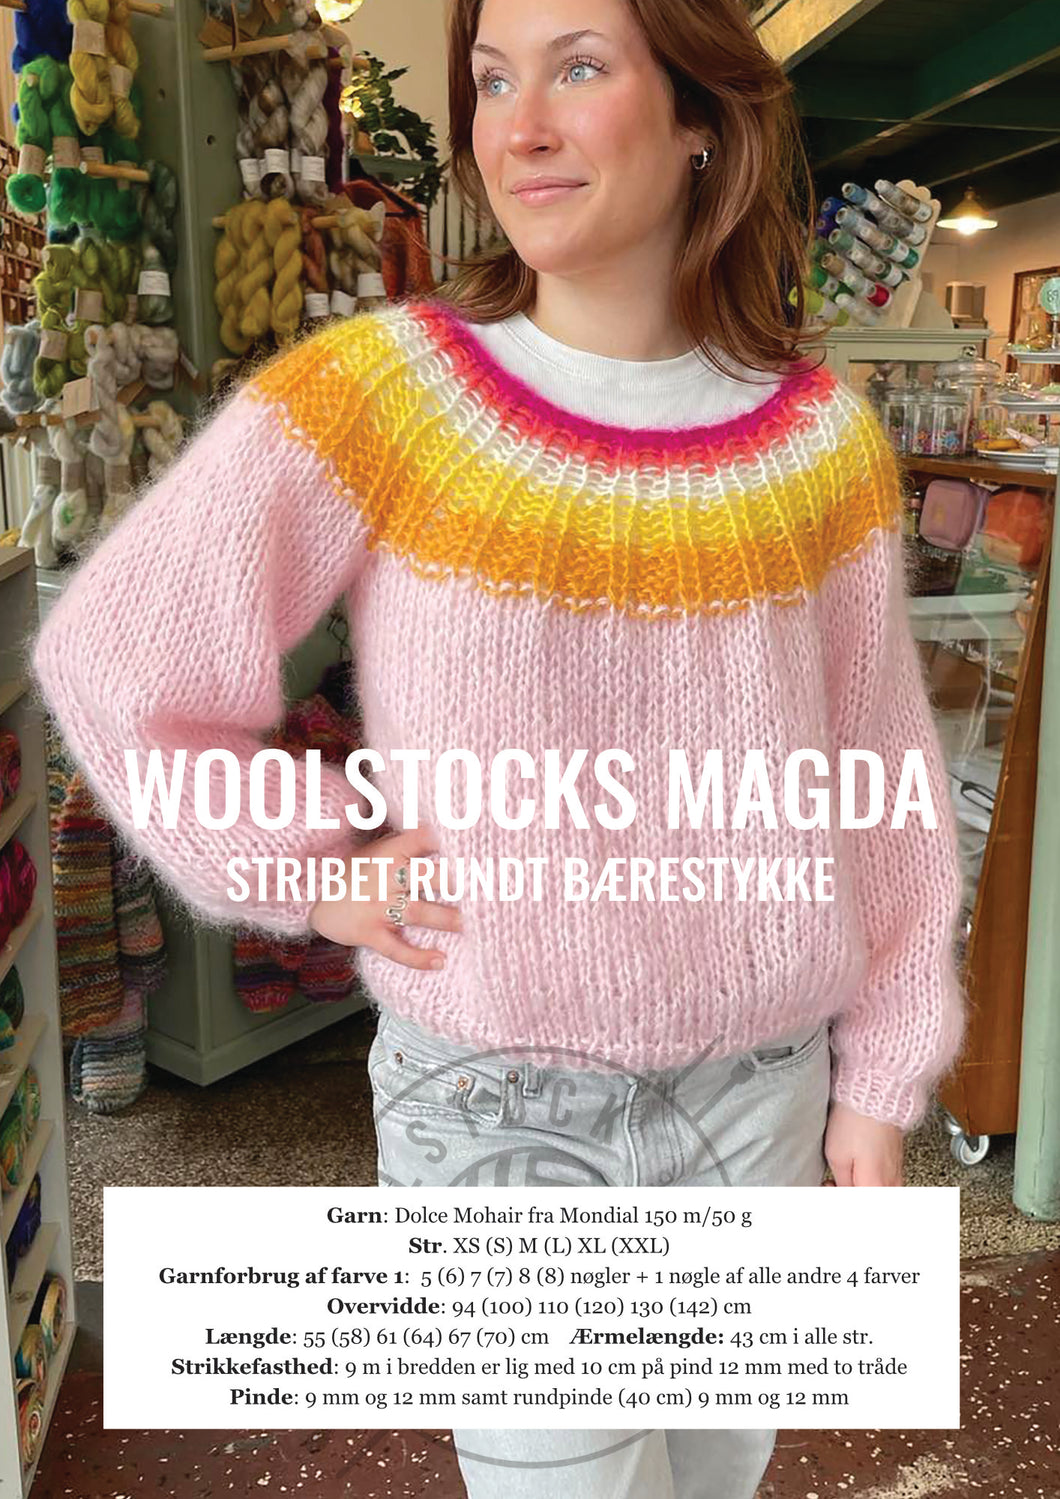 rig Galaxy jord Woolstocks Magda – Woolstock cotton, wool and coffee